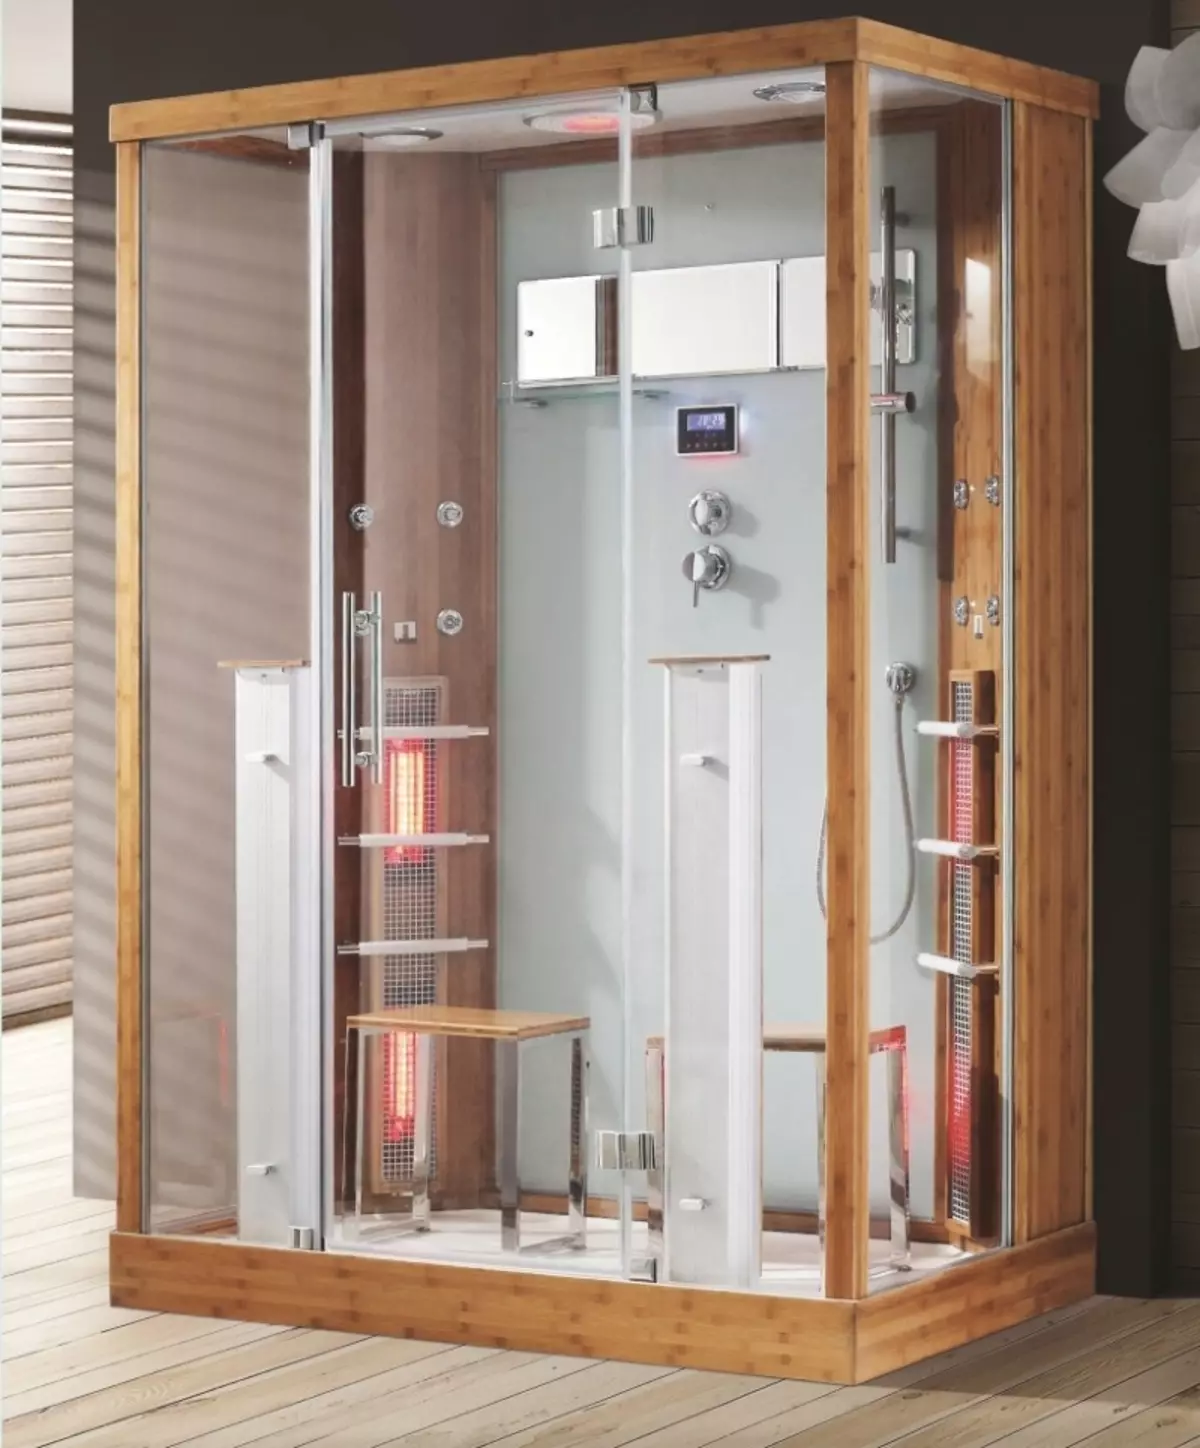 Cabina de dutxa amb generador de vapor: models amb bany de vapor turc i bany, amb sauna Hamam i finlandesa, altres opcions. Referentacions 10322_22